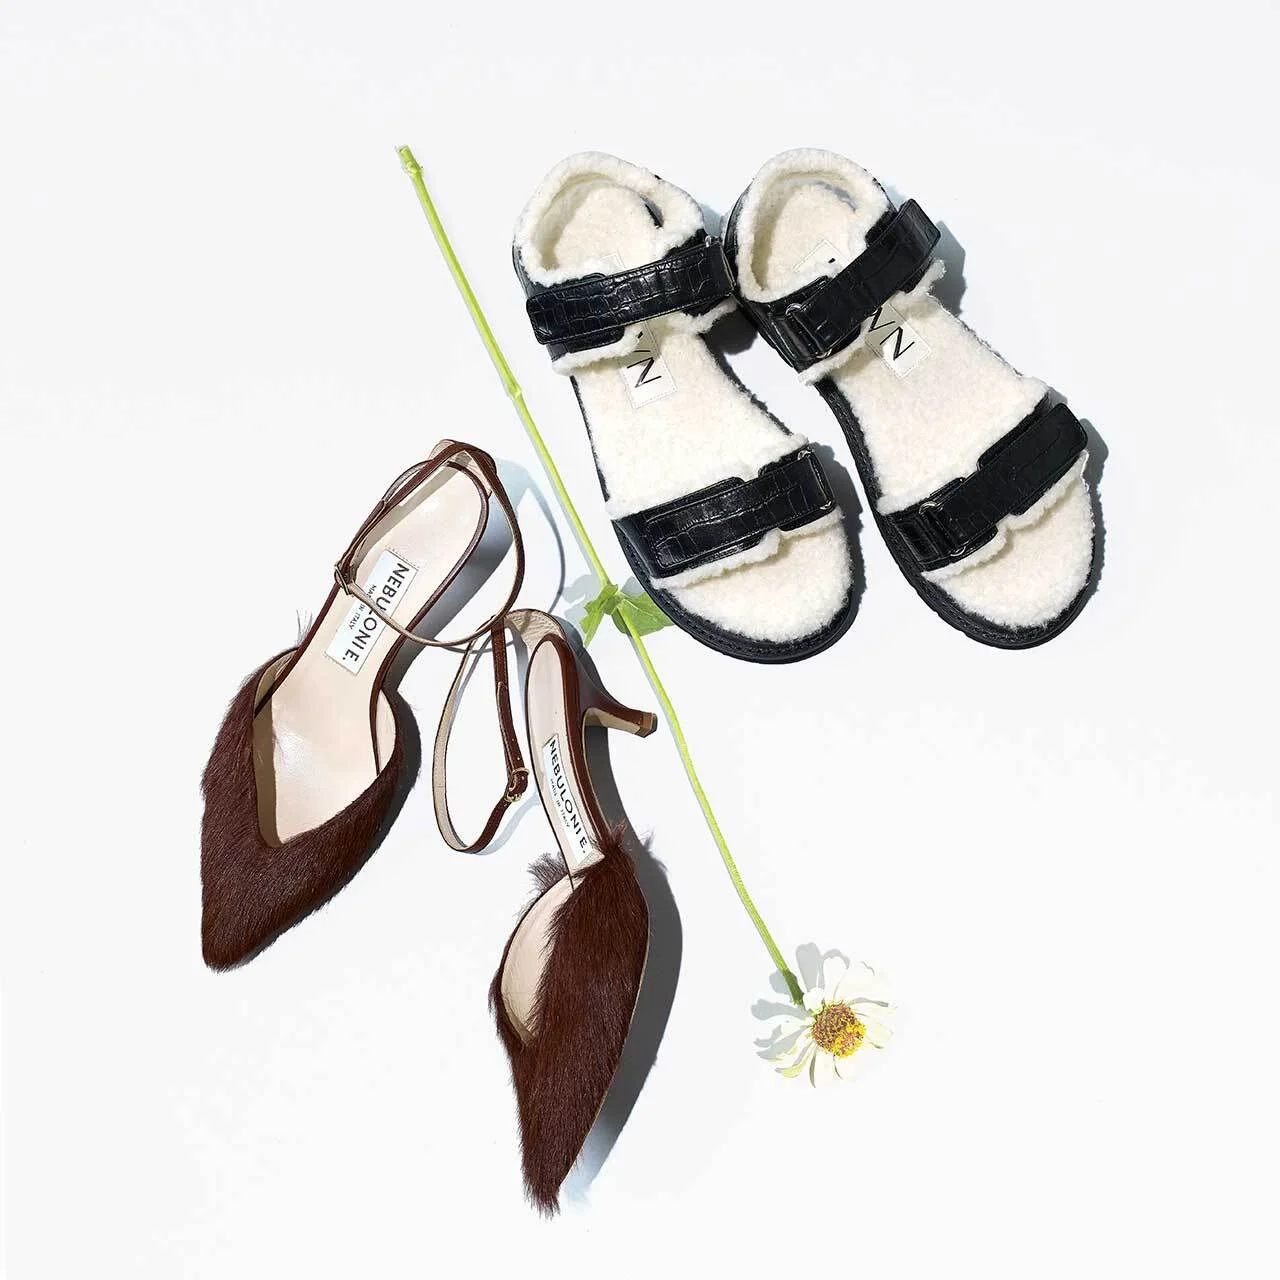 〈右〉靴（H1.5 cm）／ユナイテッドアローズ 渋谷スクランブルスクエア店（ヒューン） 〈左〉靴（H5 cm）／トゥモローランド（ネブローニ）